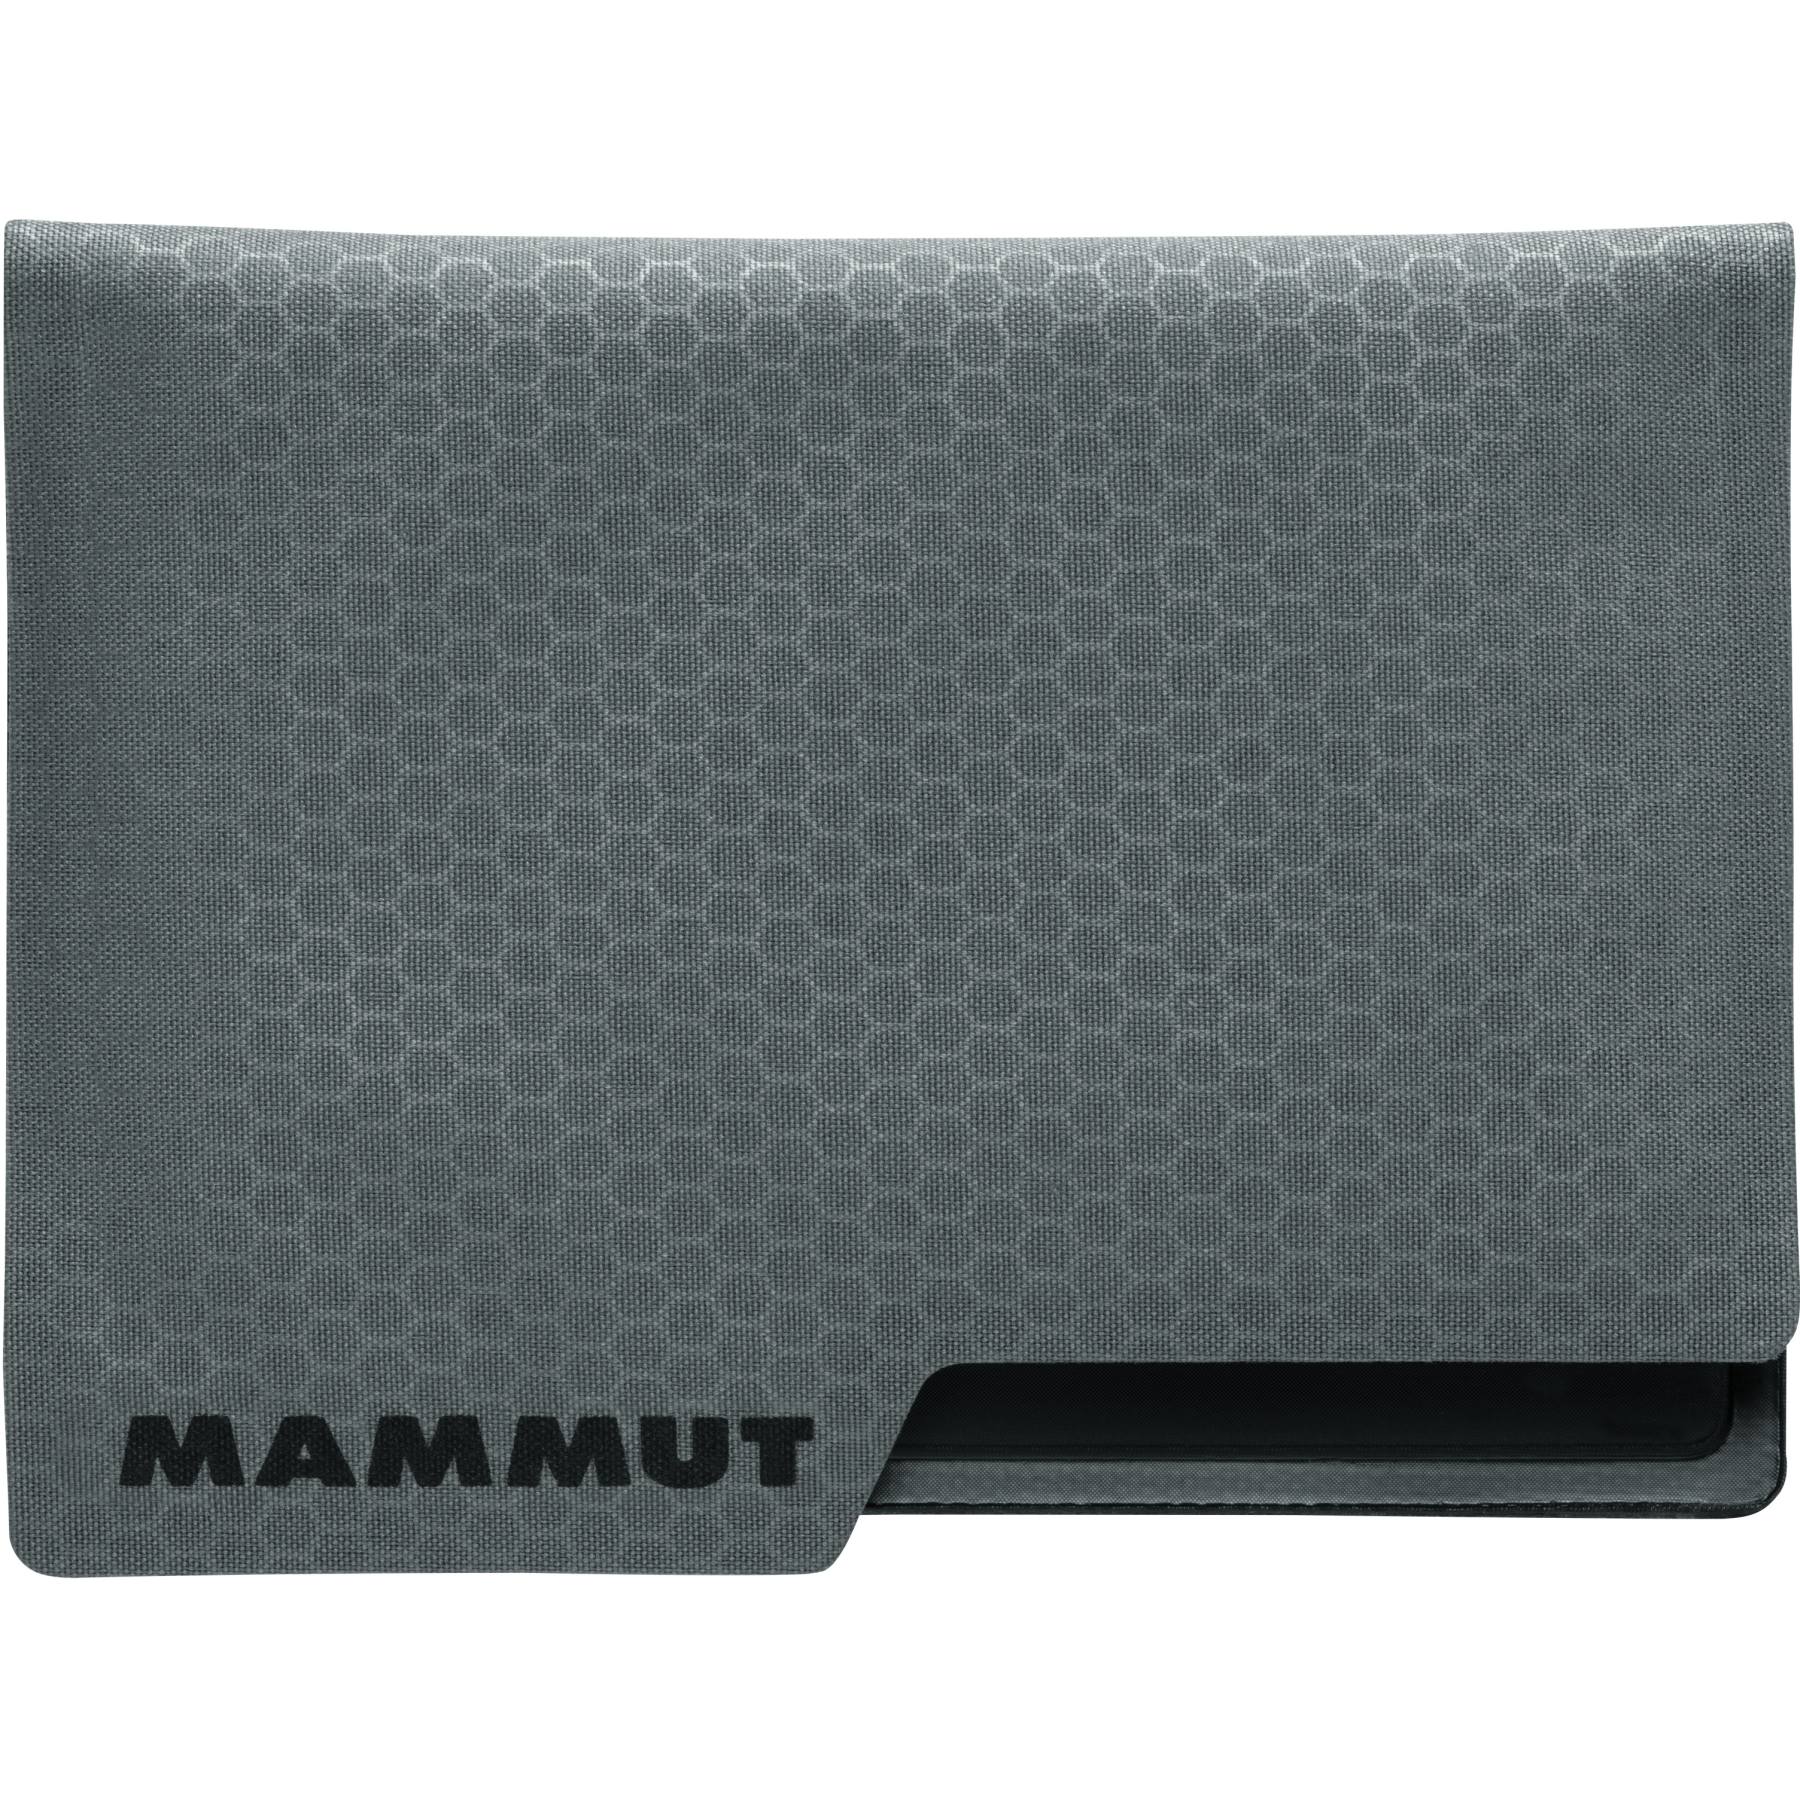 Image of Mammut Smart Wallet Ultralight - smoke